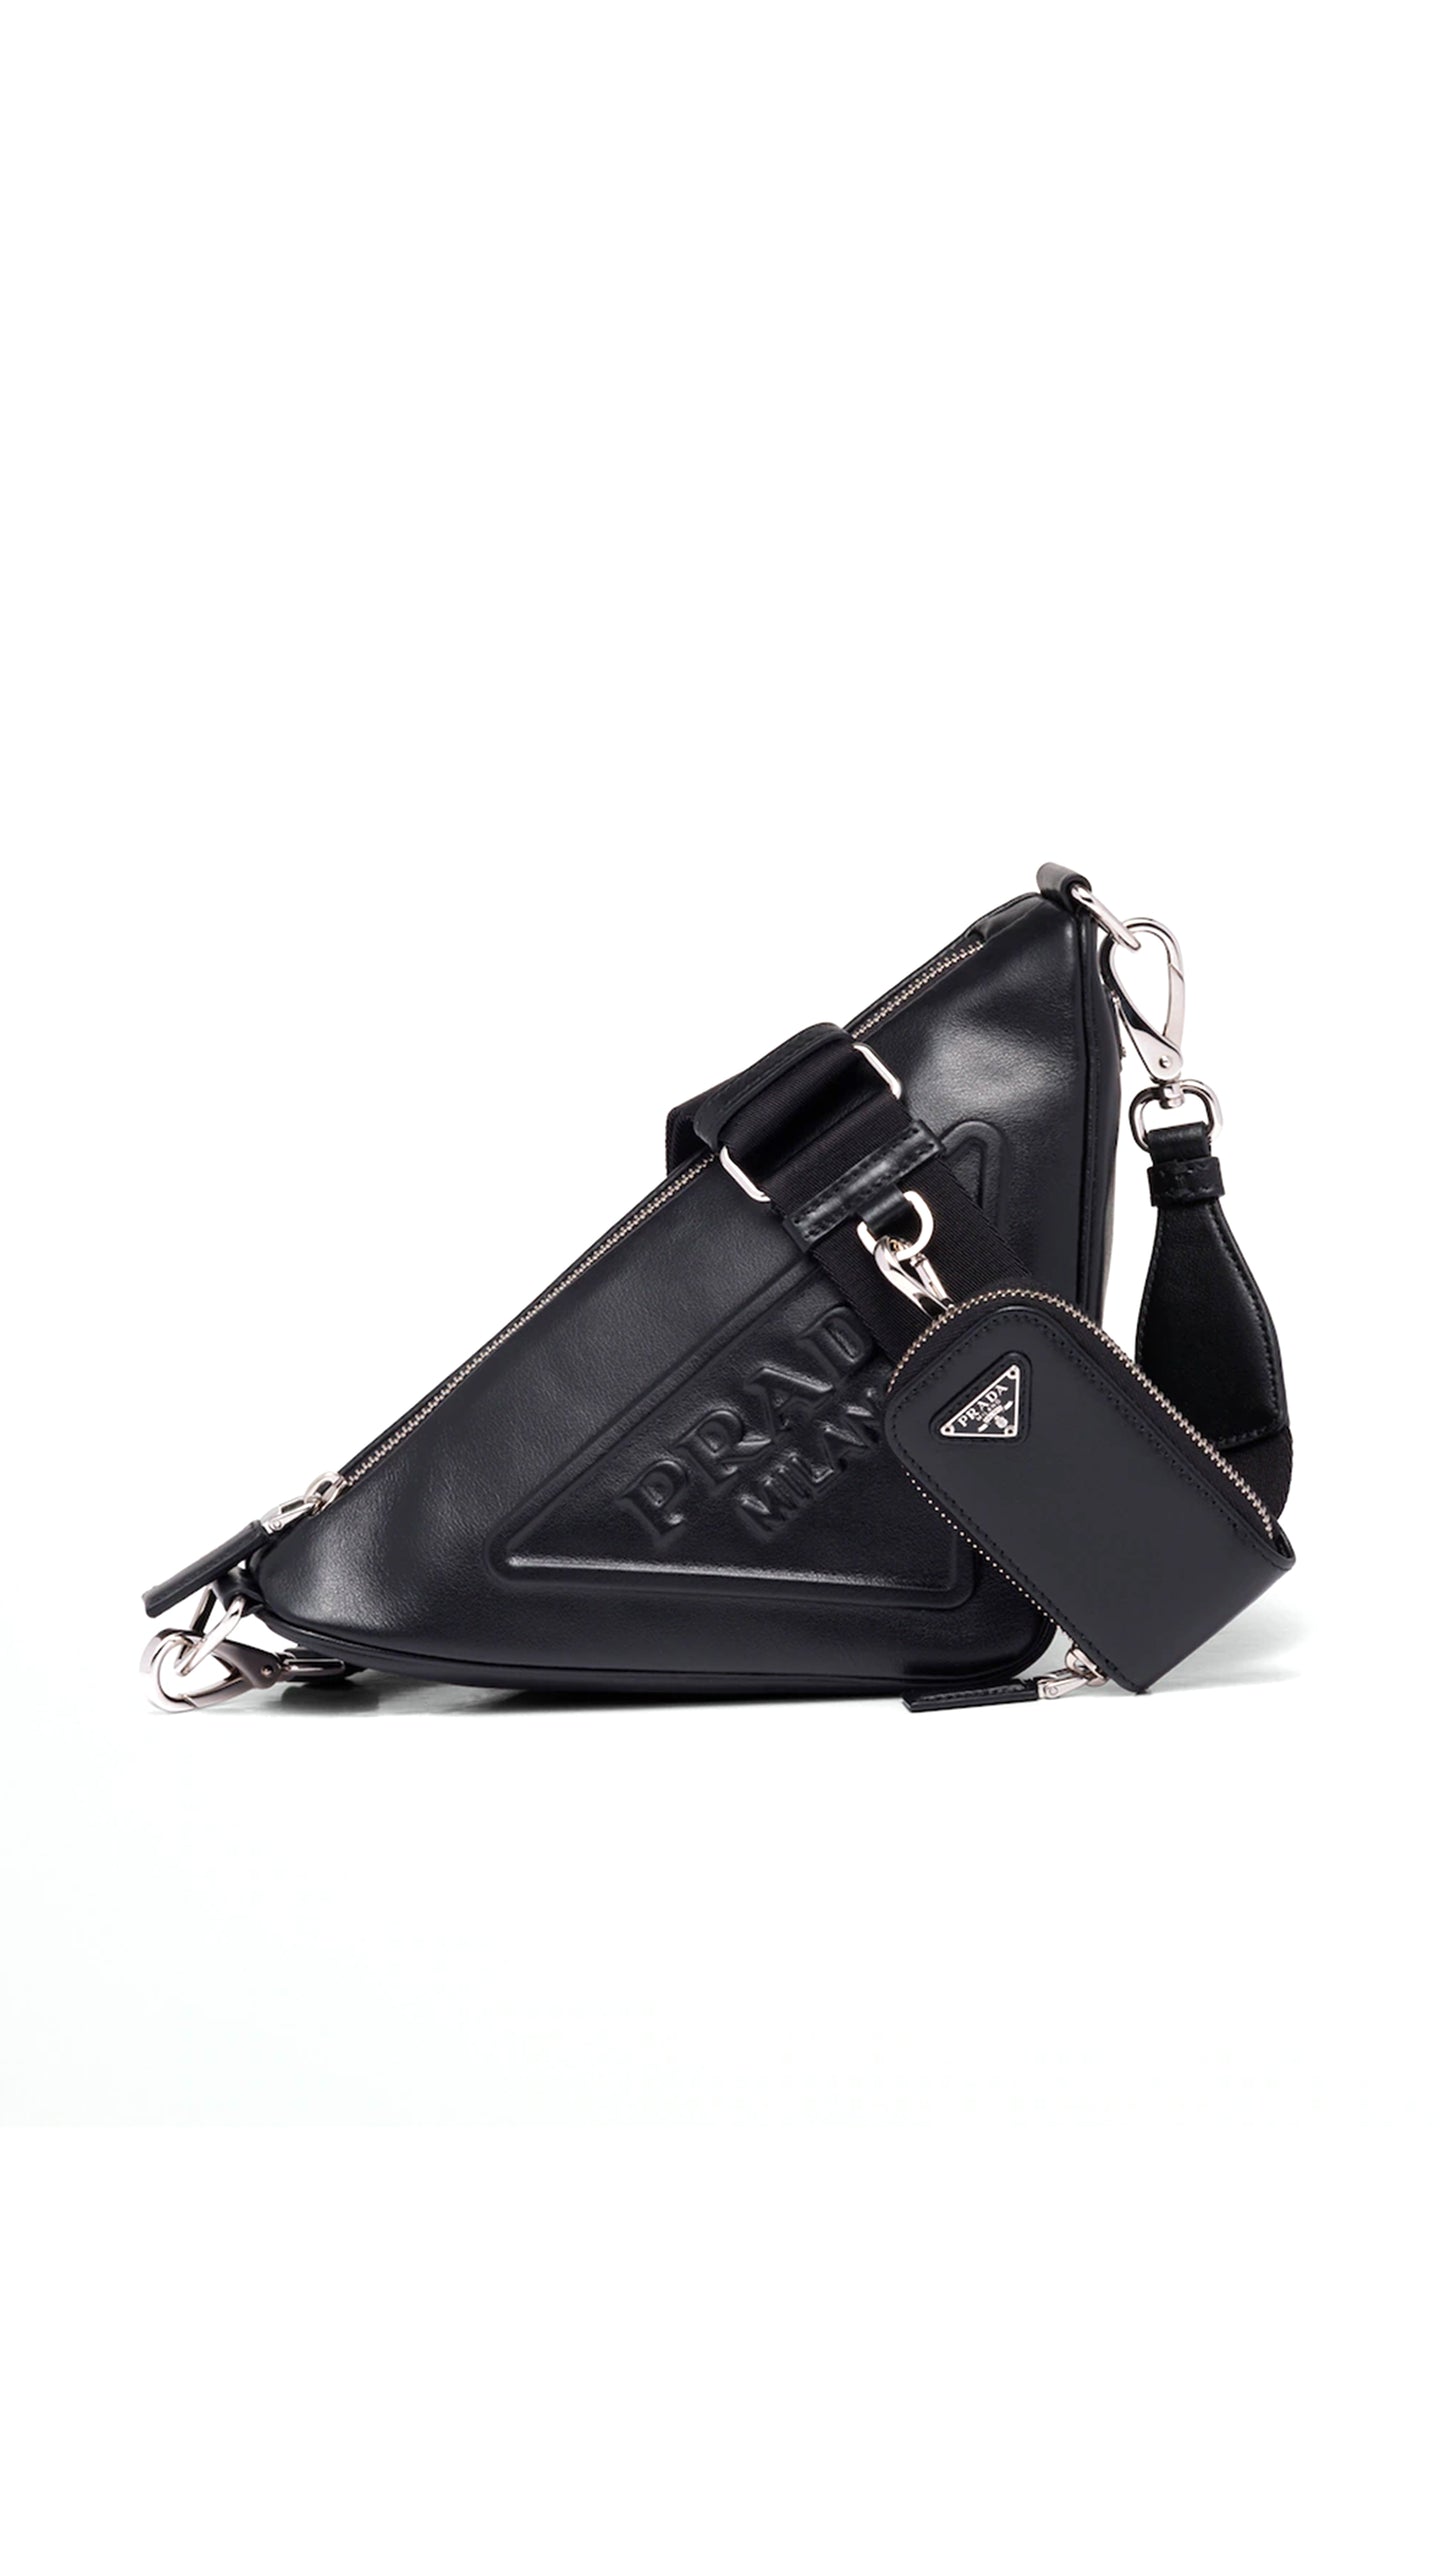 Leather Triangle Shoulder Bag - Black